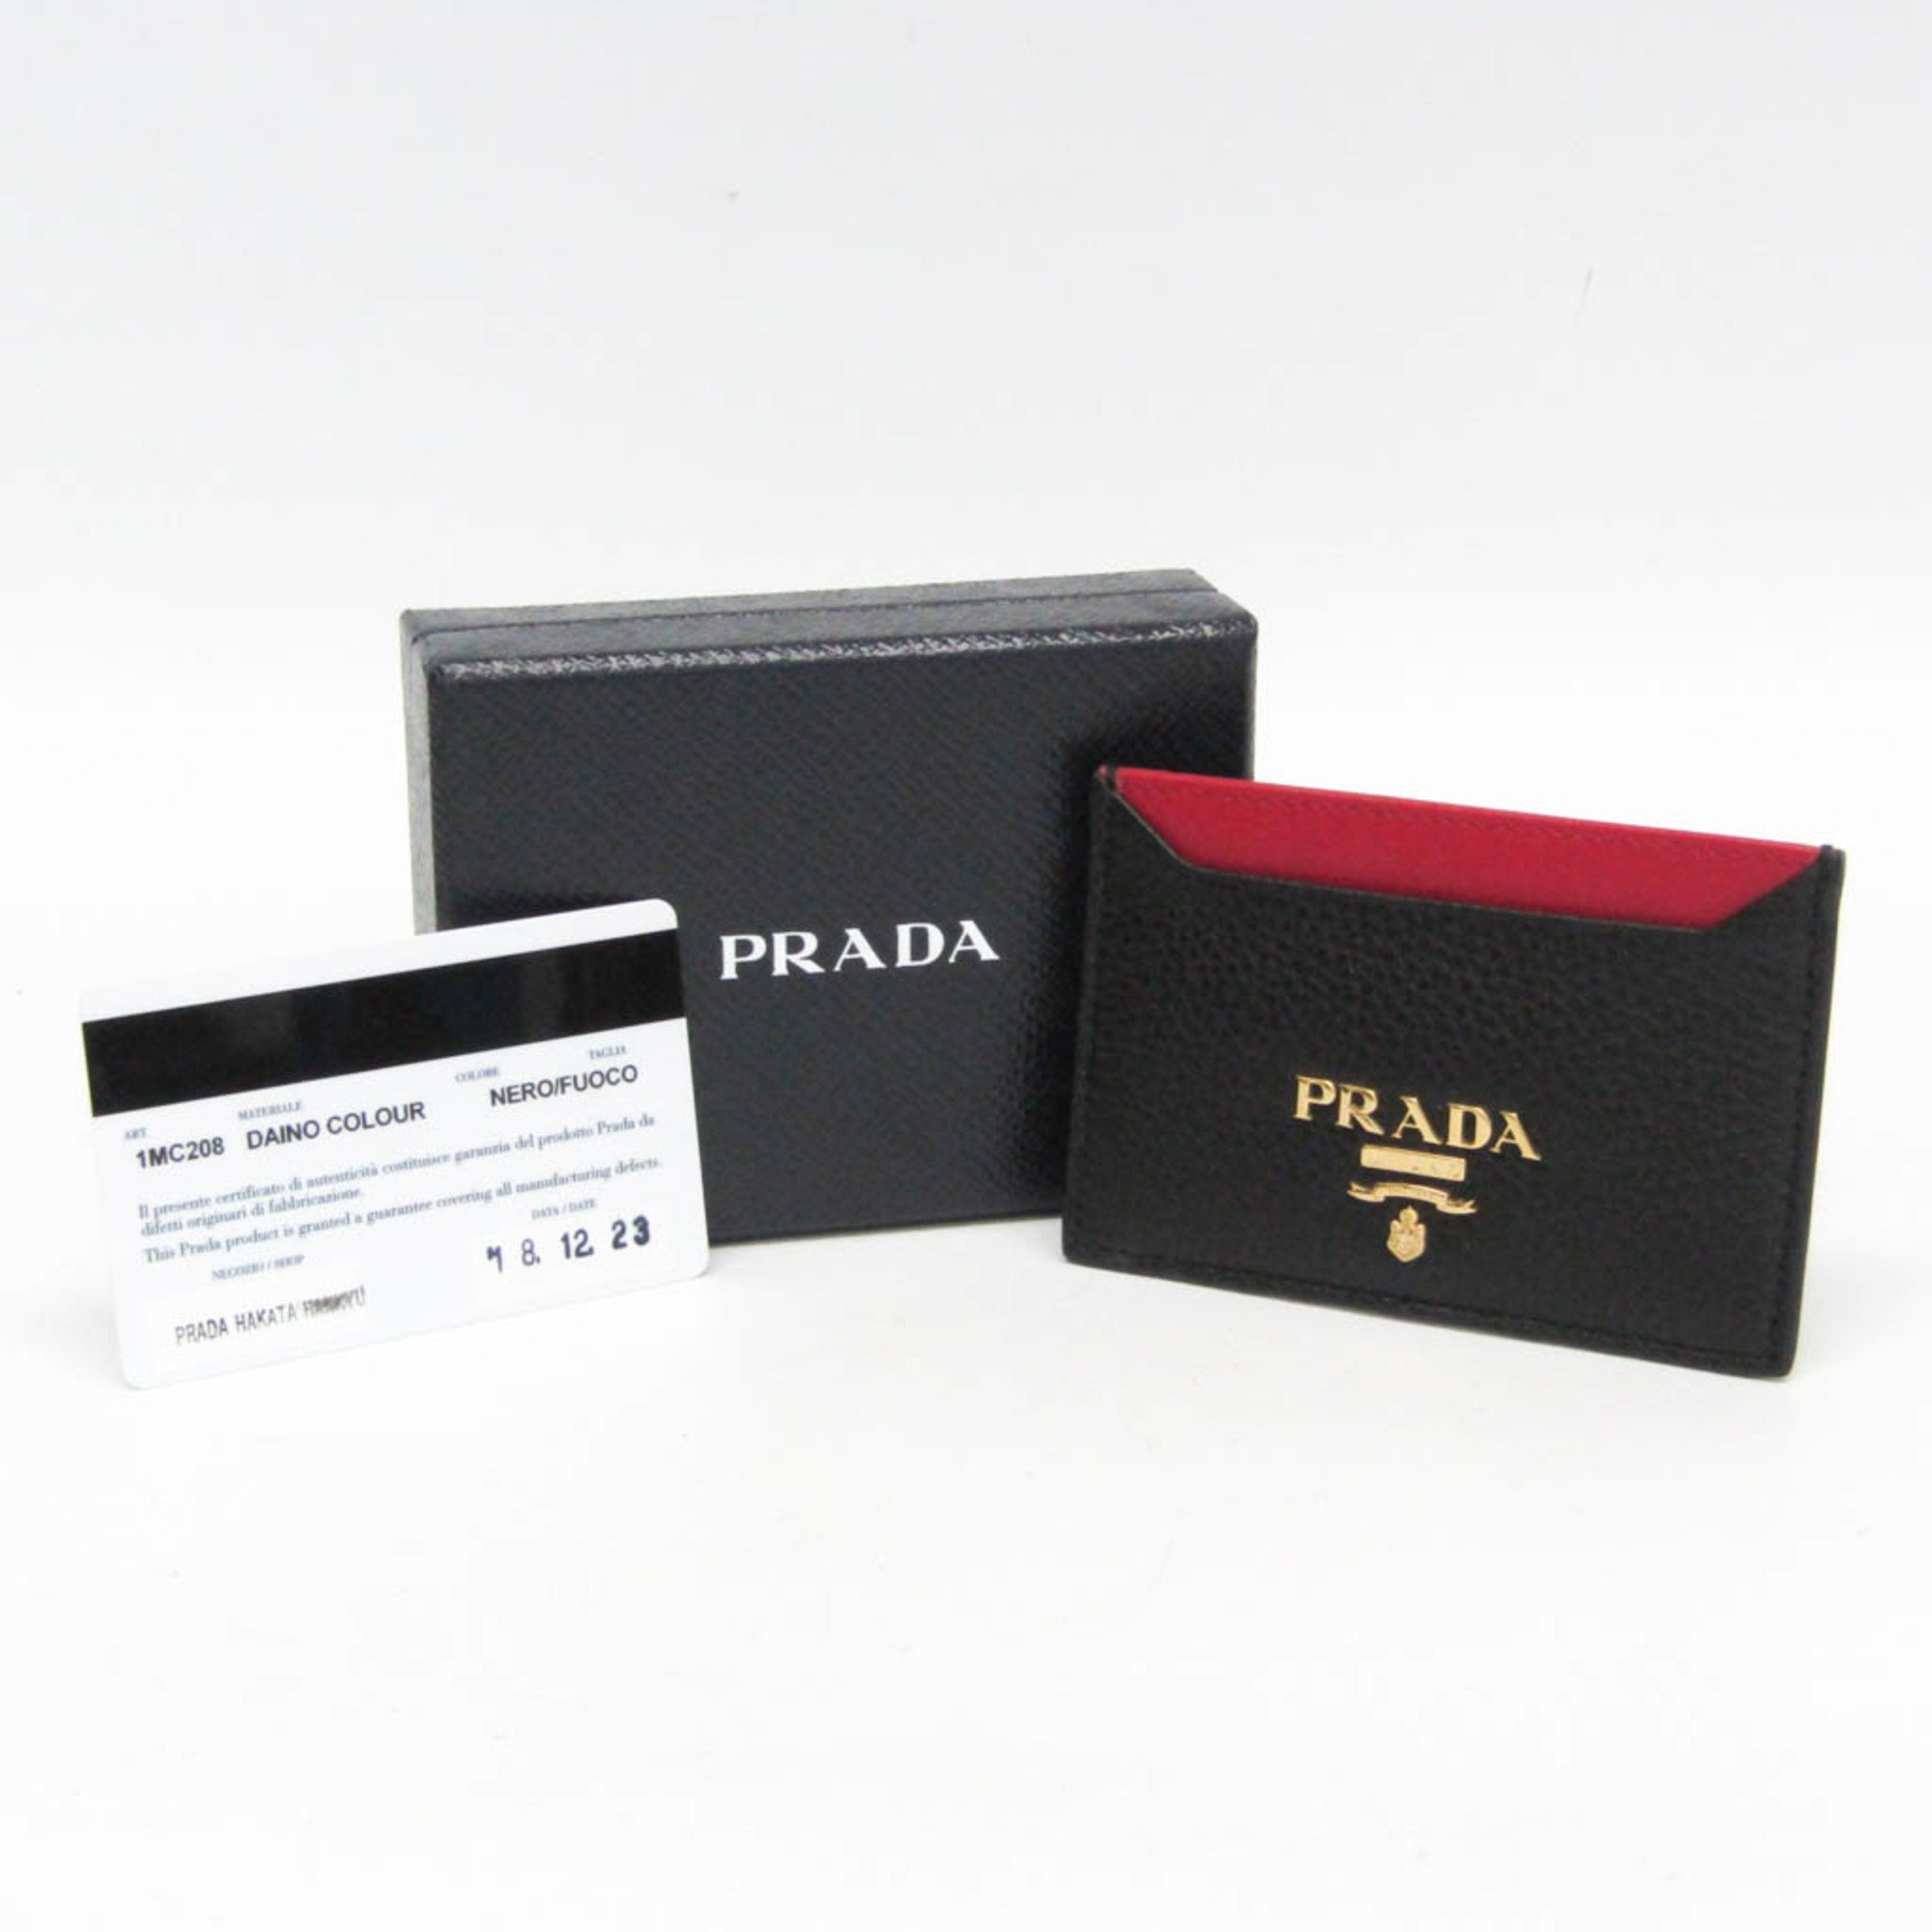 プラダ(Prada) DAINO COLOUR 1MC208 レザー カードケース ブラック